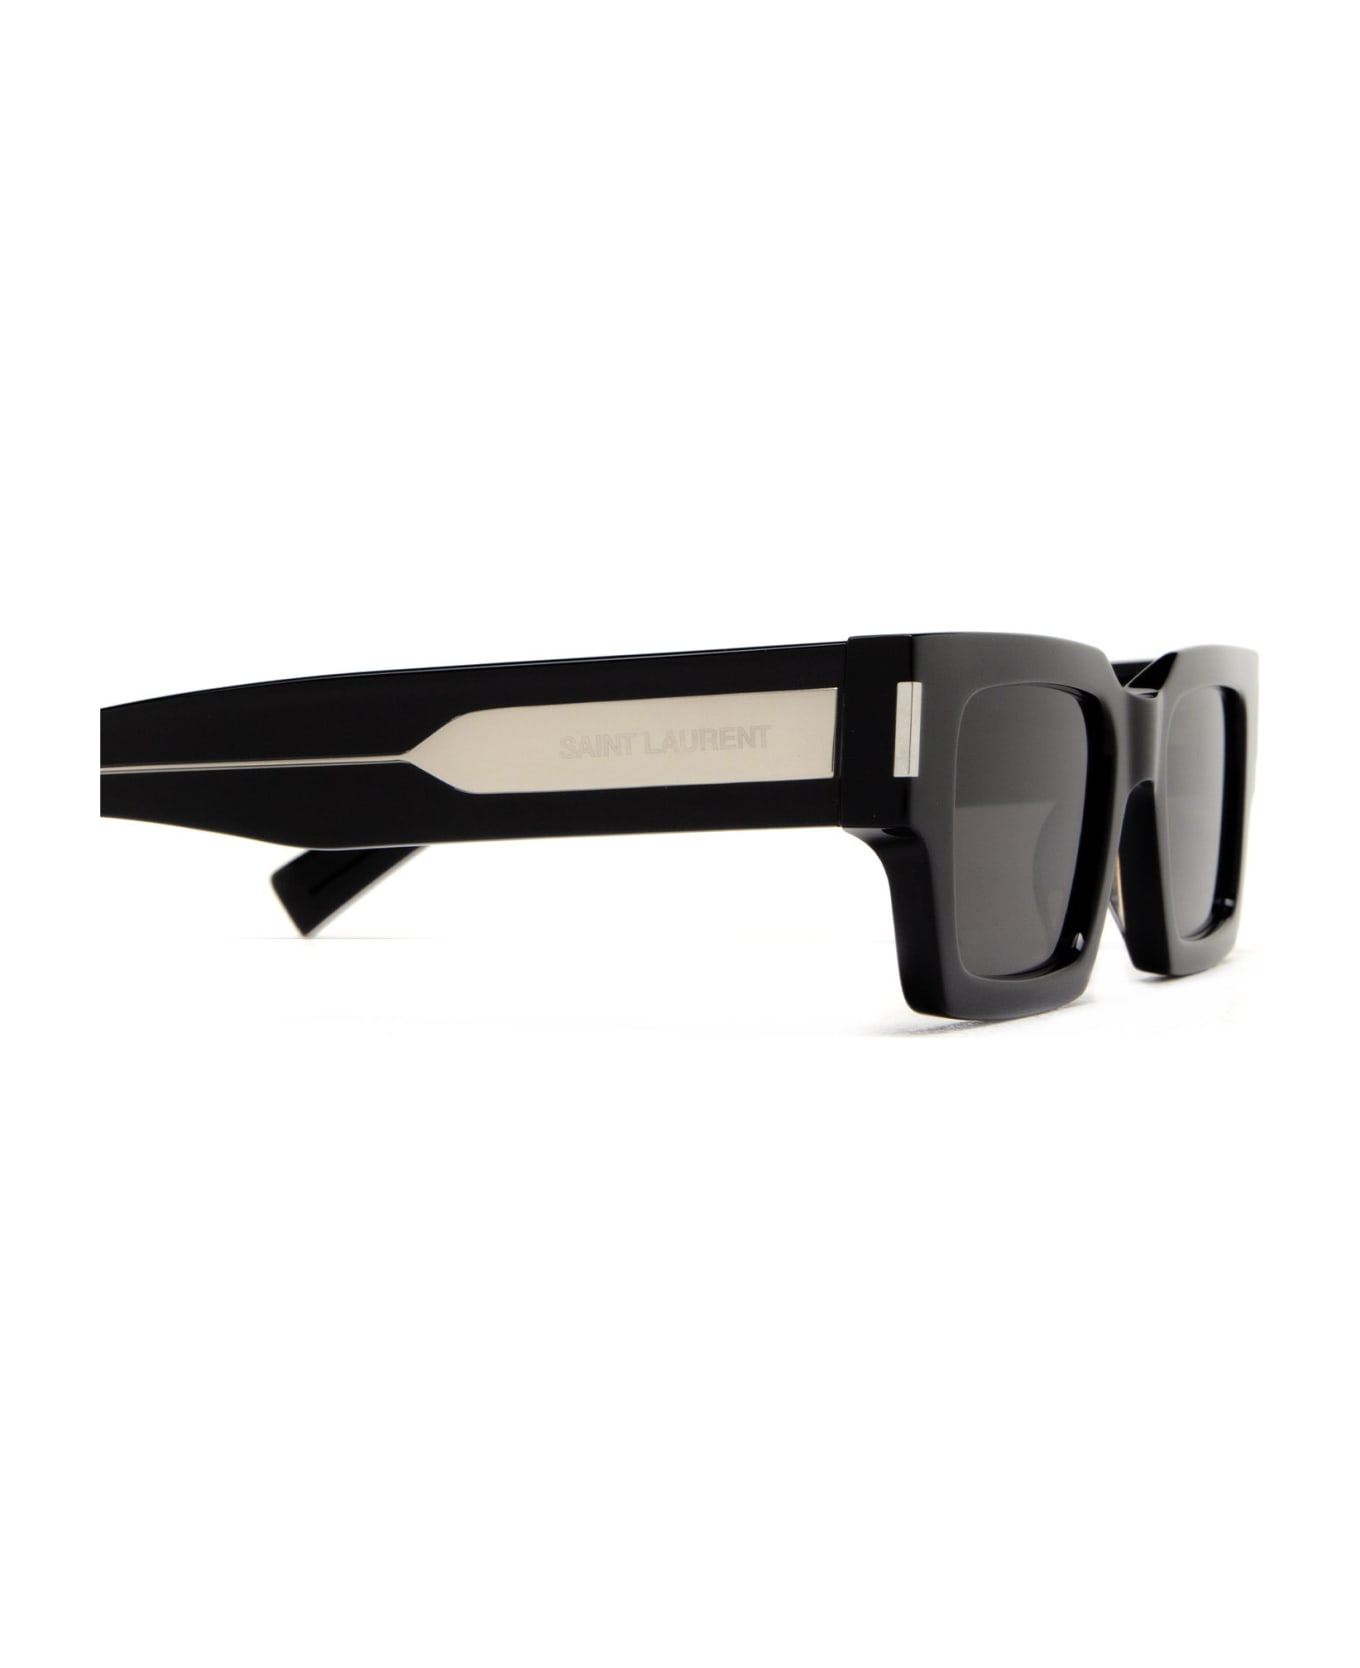 Saint Laurent Eyewear Sl 572 Black Sunglasses - Black